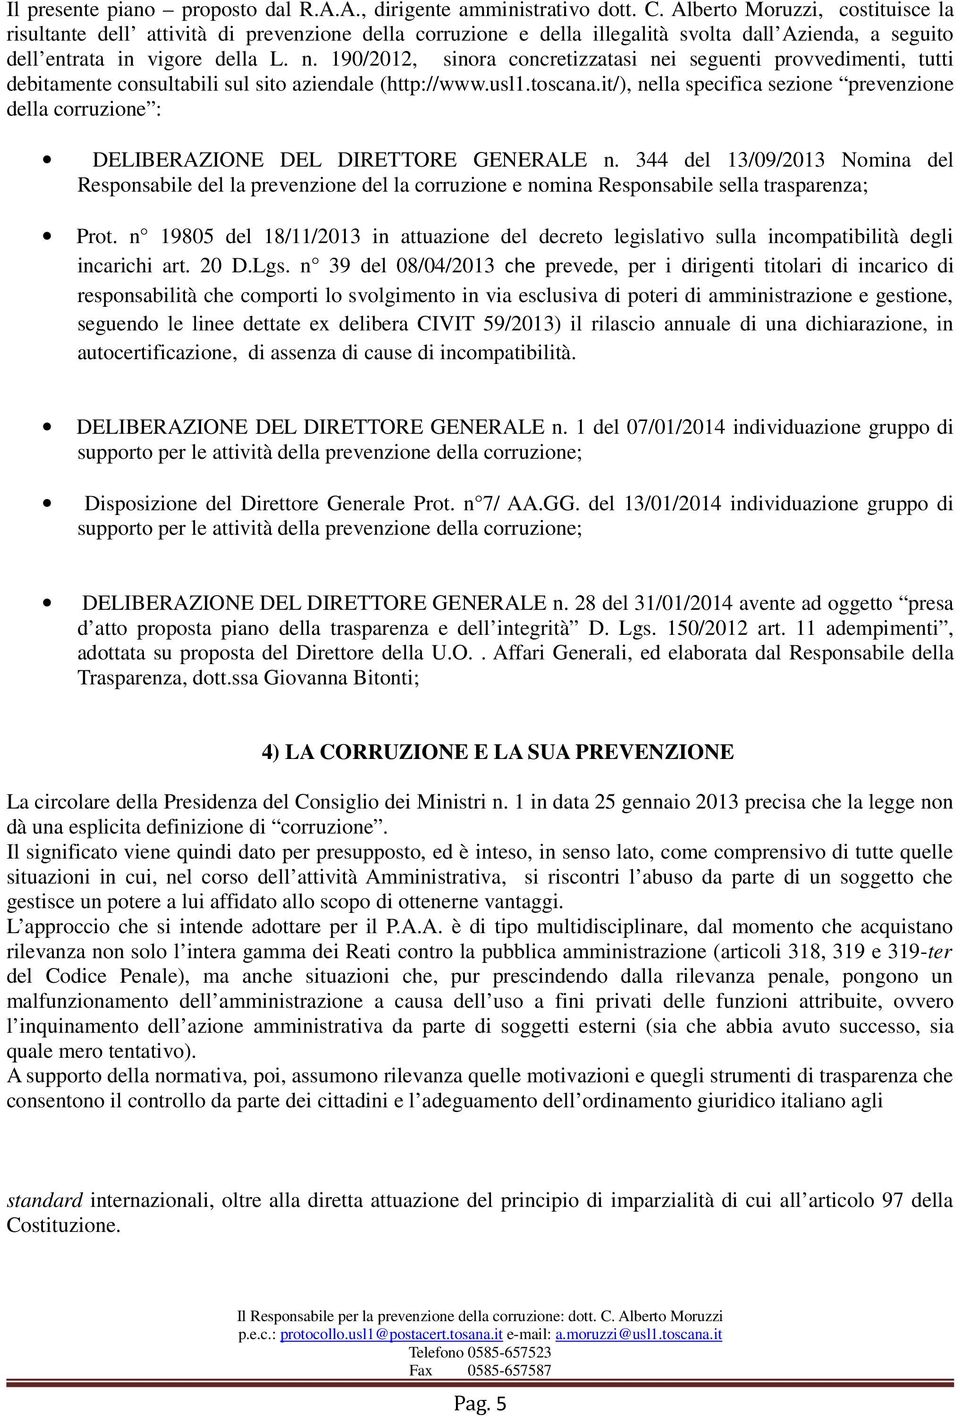 190/2012, sinora concretizzatasi nei seguenti provvedimenti, tutti debitamente consultabili sul sito aziendale (http://www.usl1.toscana.